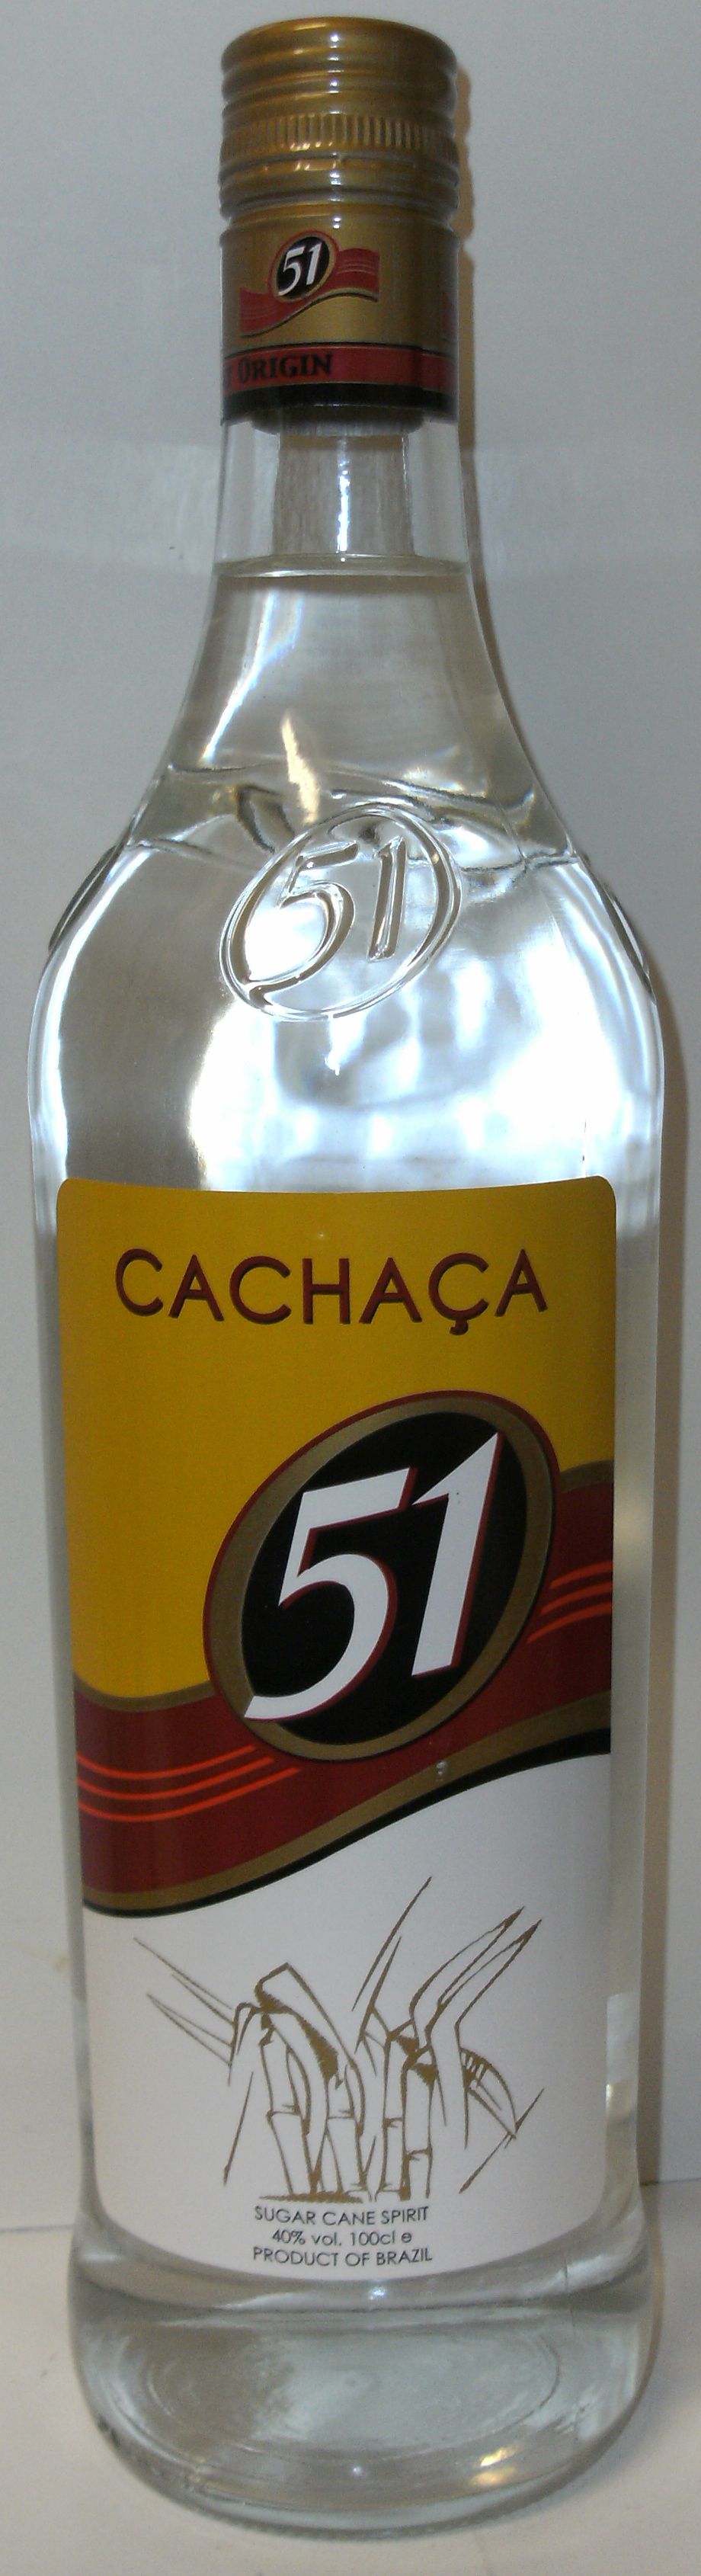 Rum: Cachaca - ltr. Pirassununga - 40% 51 1.0 